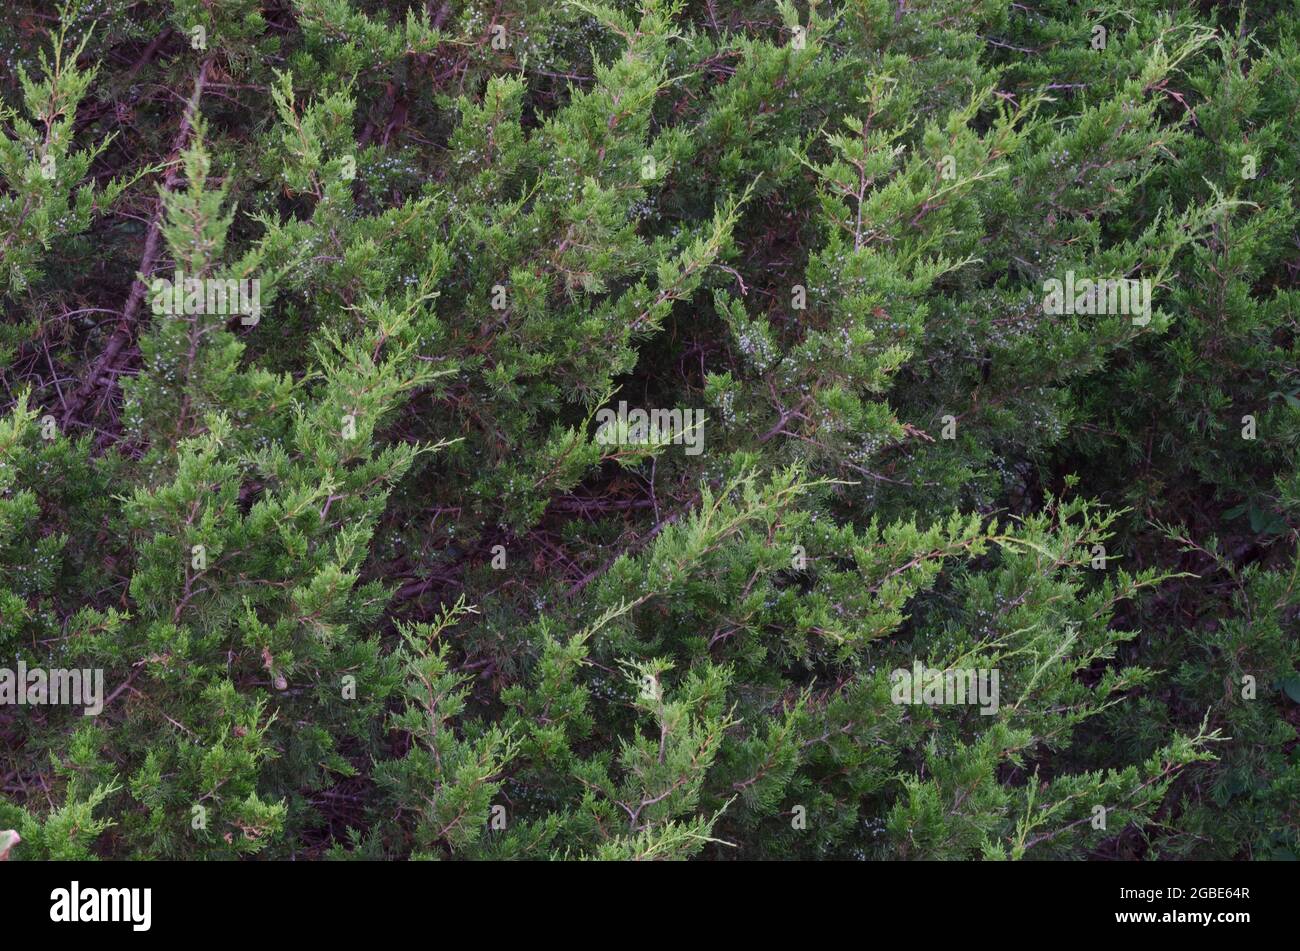 Eastern red cedar, Juniperus virginiana Stock Photo